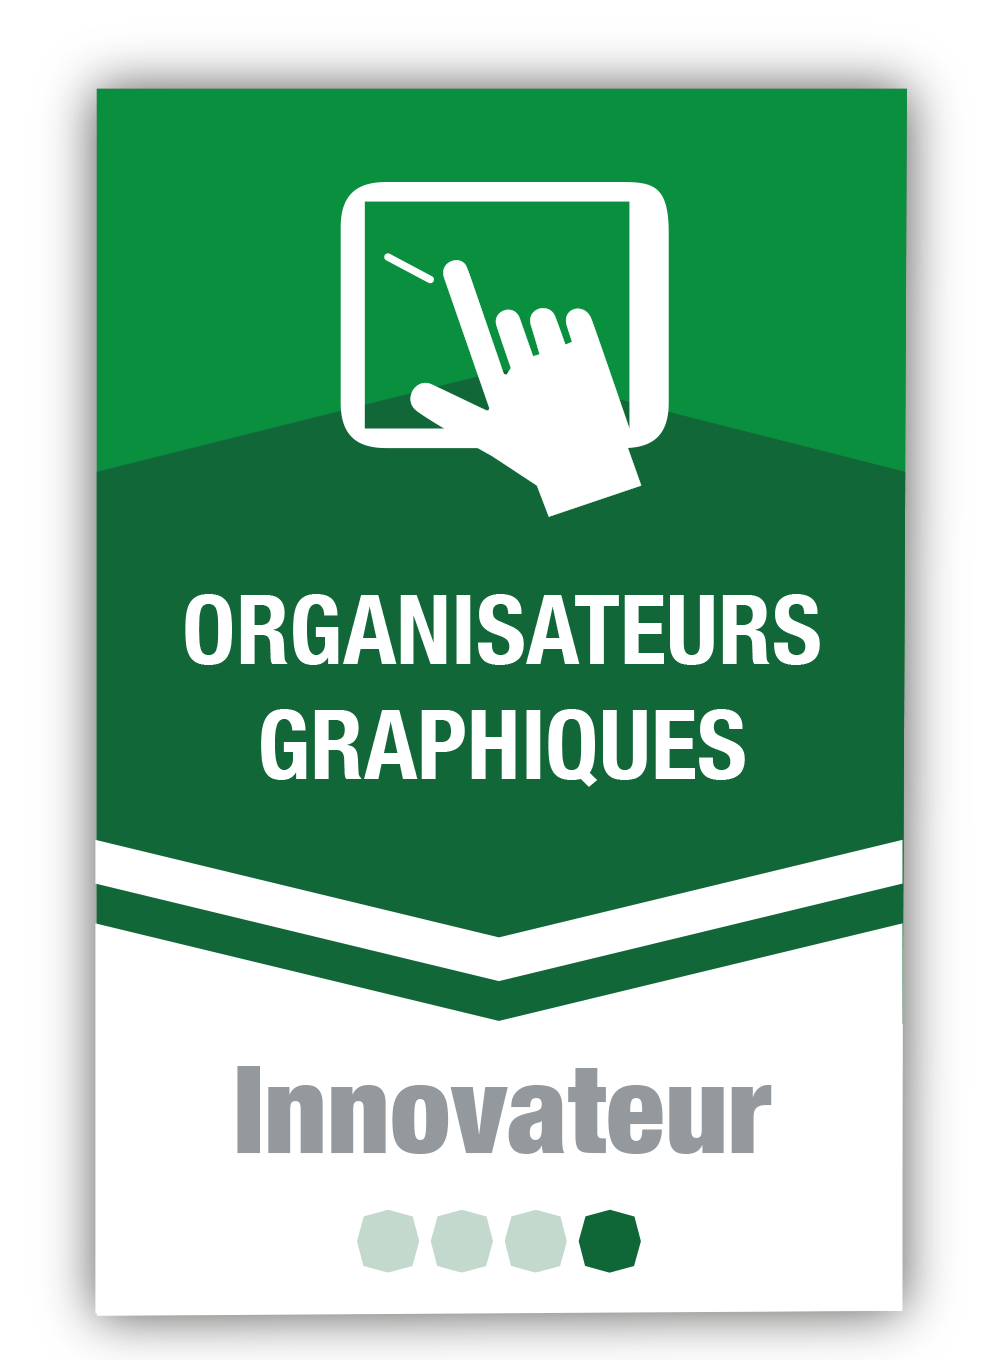 Organisateurs graphiques 4 - Innovateur